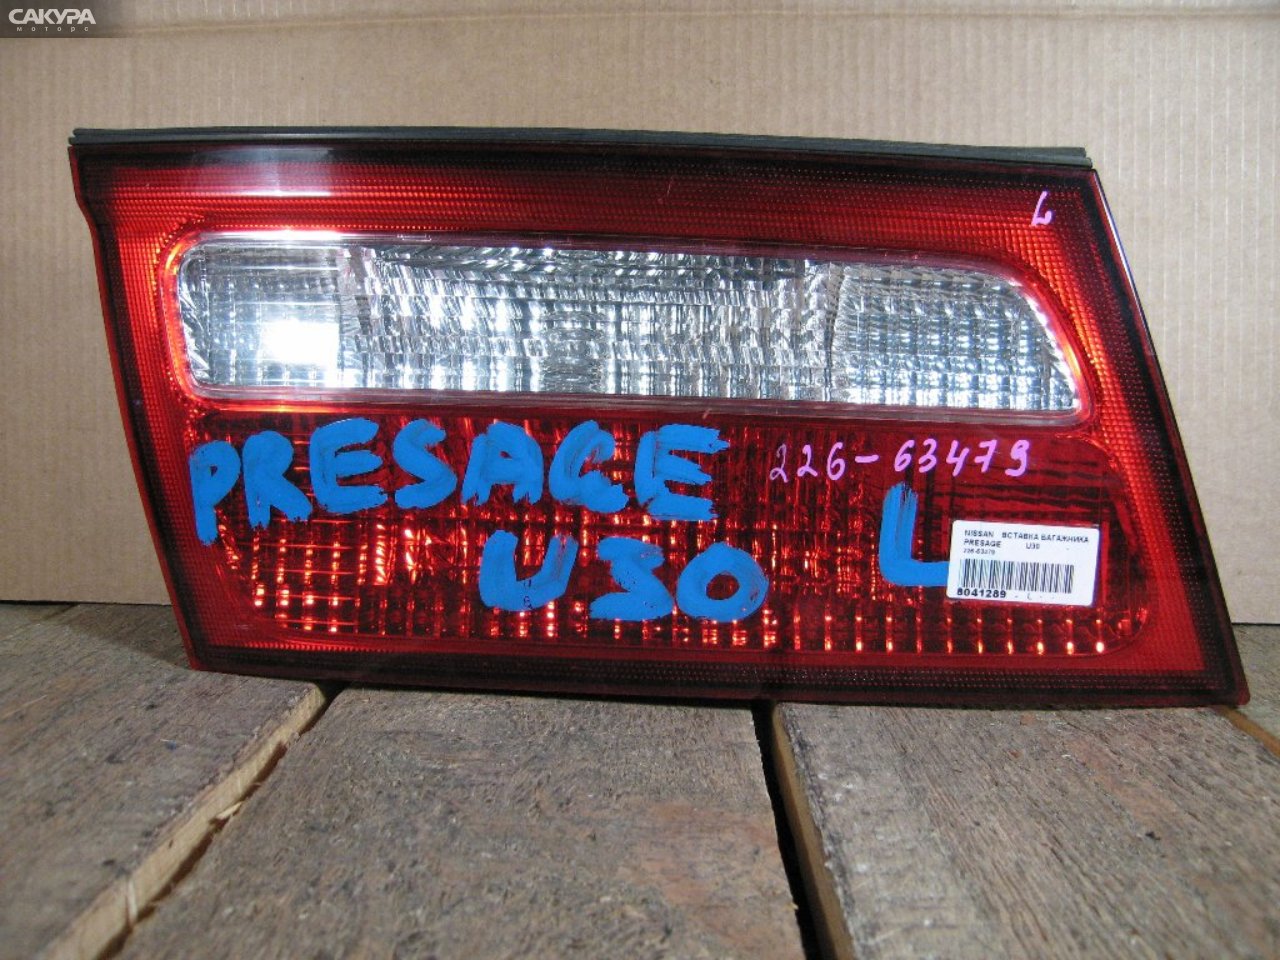 Фонарь вставка багажника левый Nissan Presage U30 226-63479: купить в Сакура Абакан.